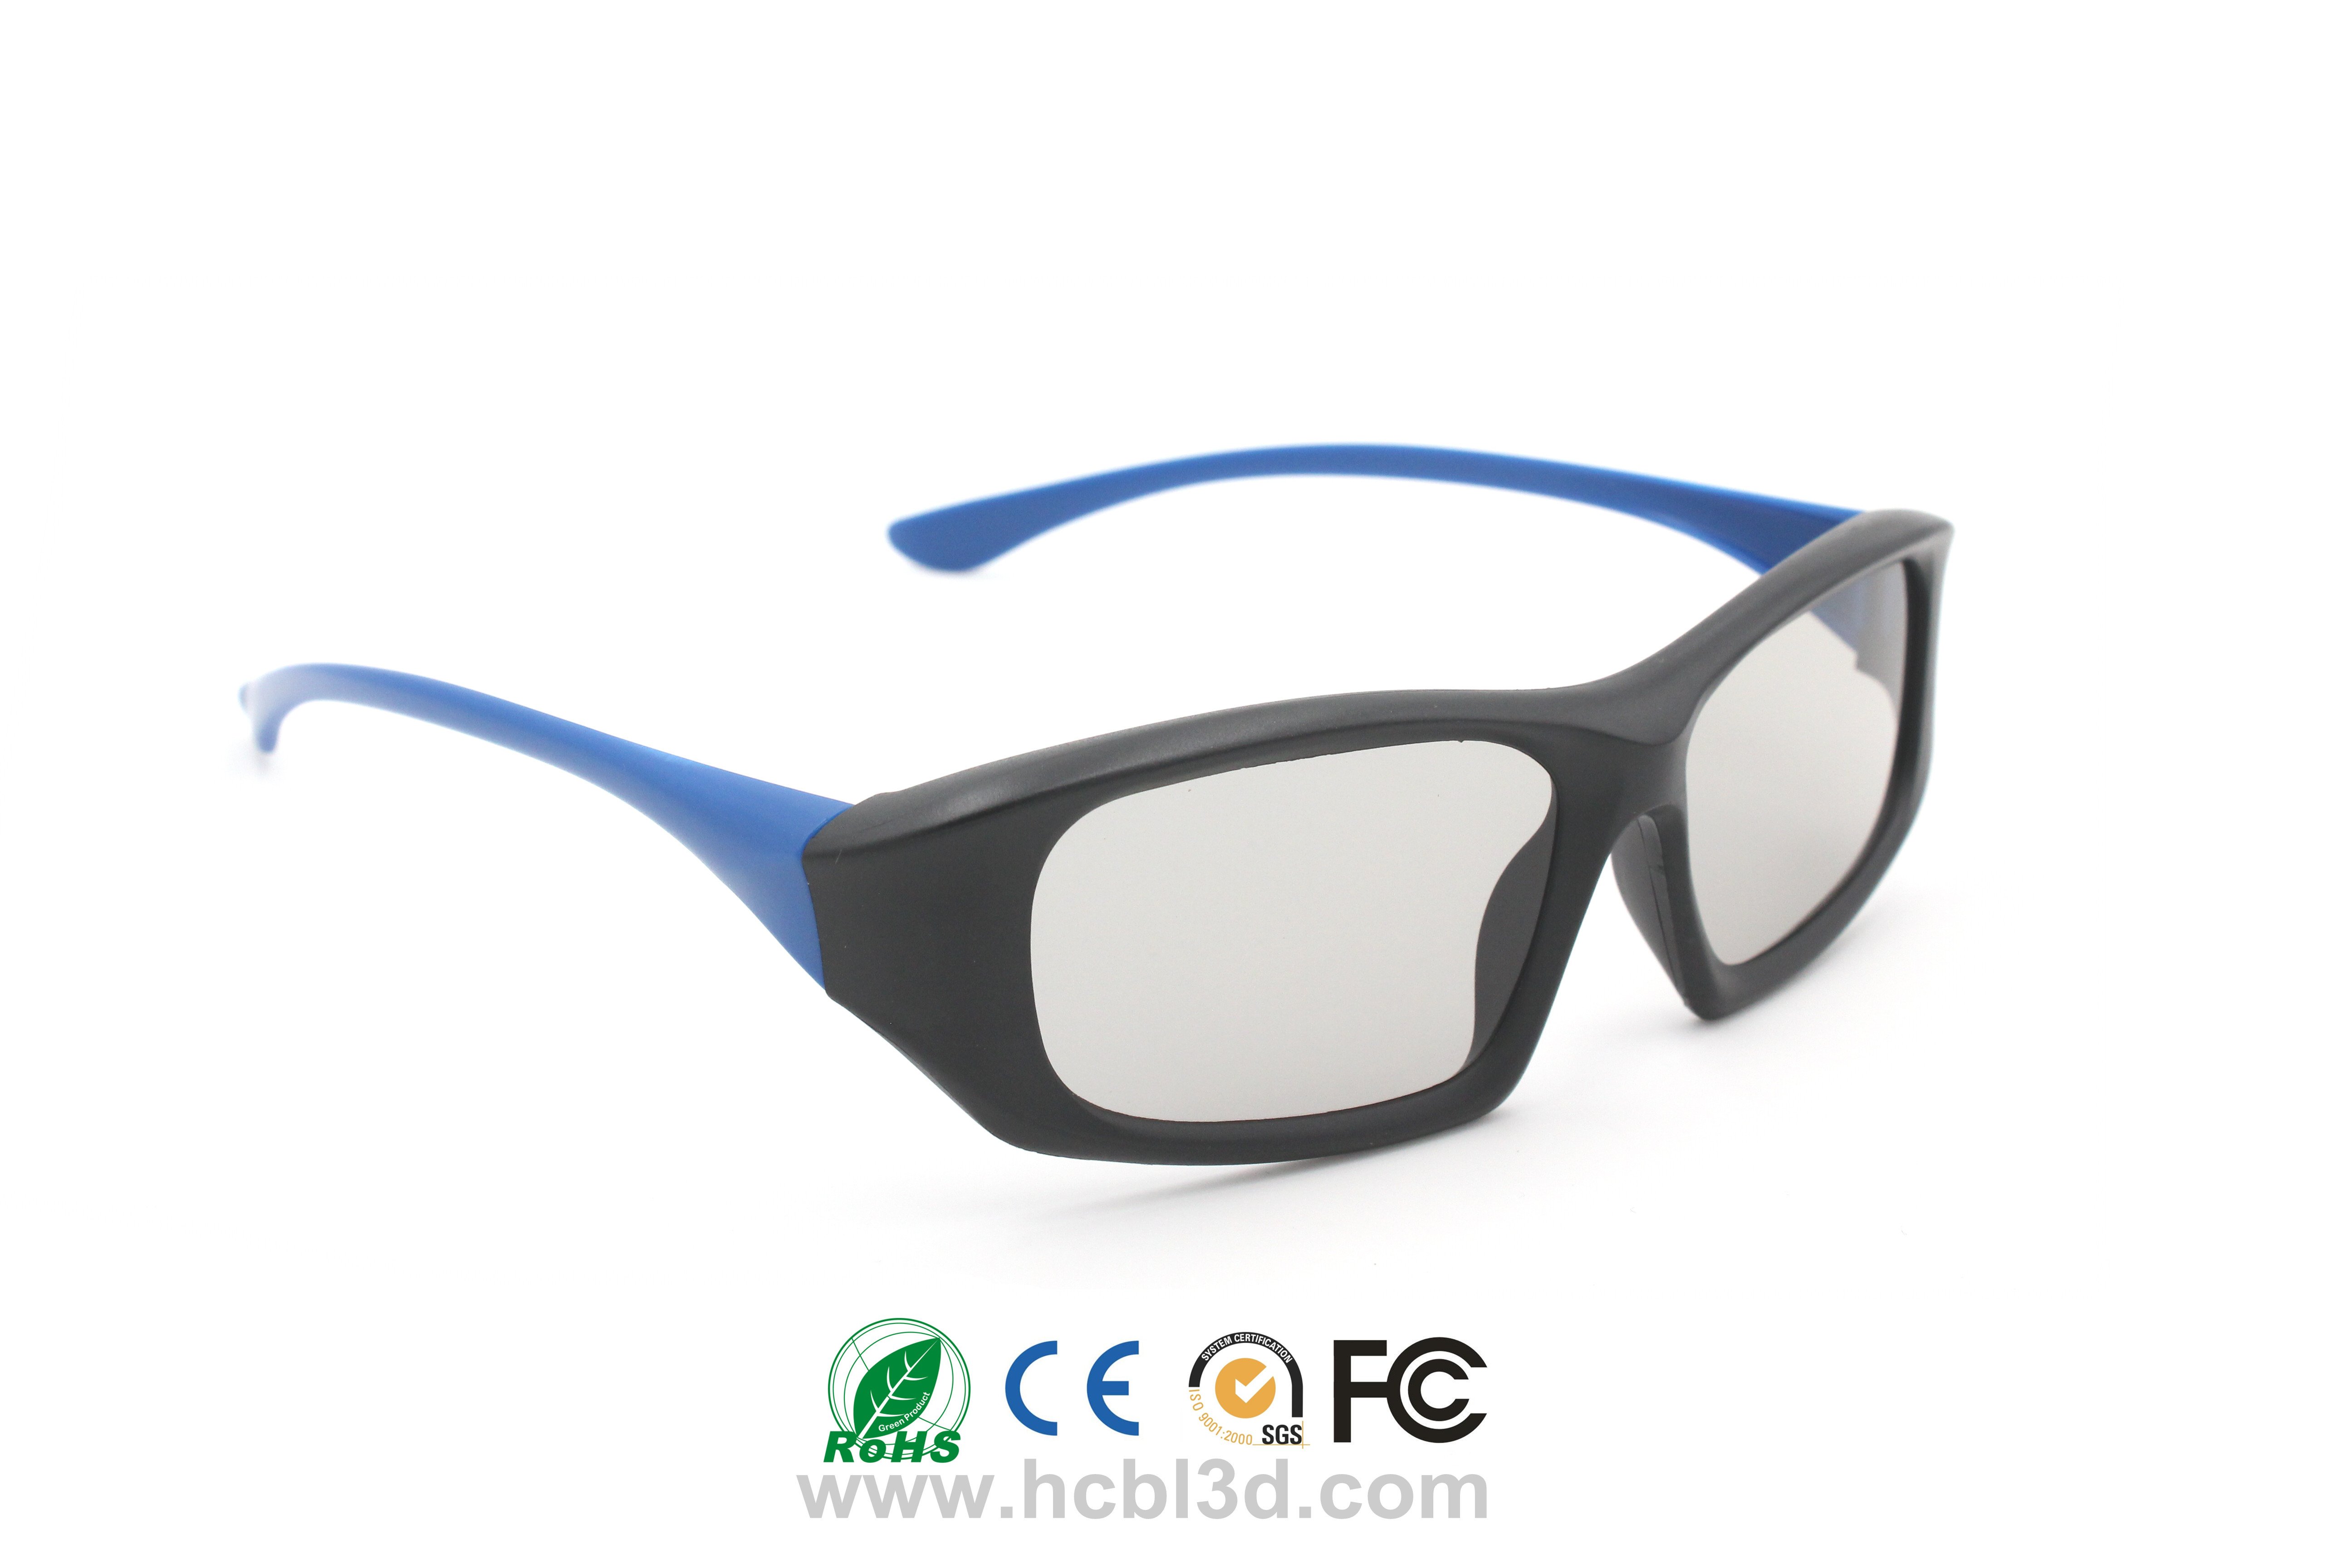 Customized Polarized 3D Glasses unique design for 3D cinemas